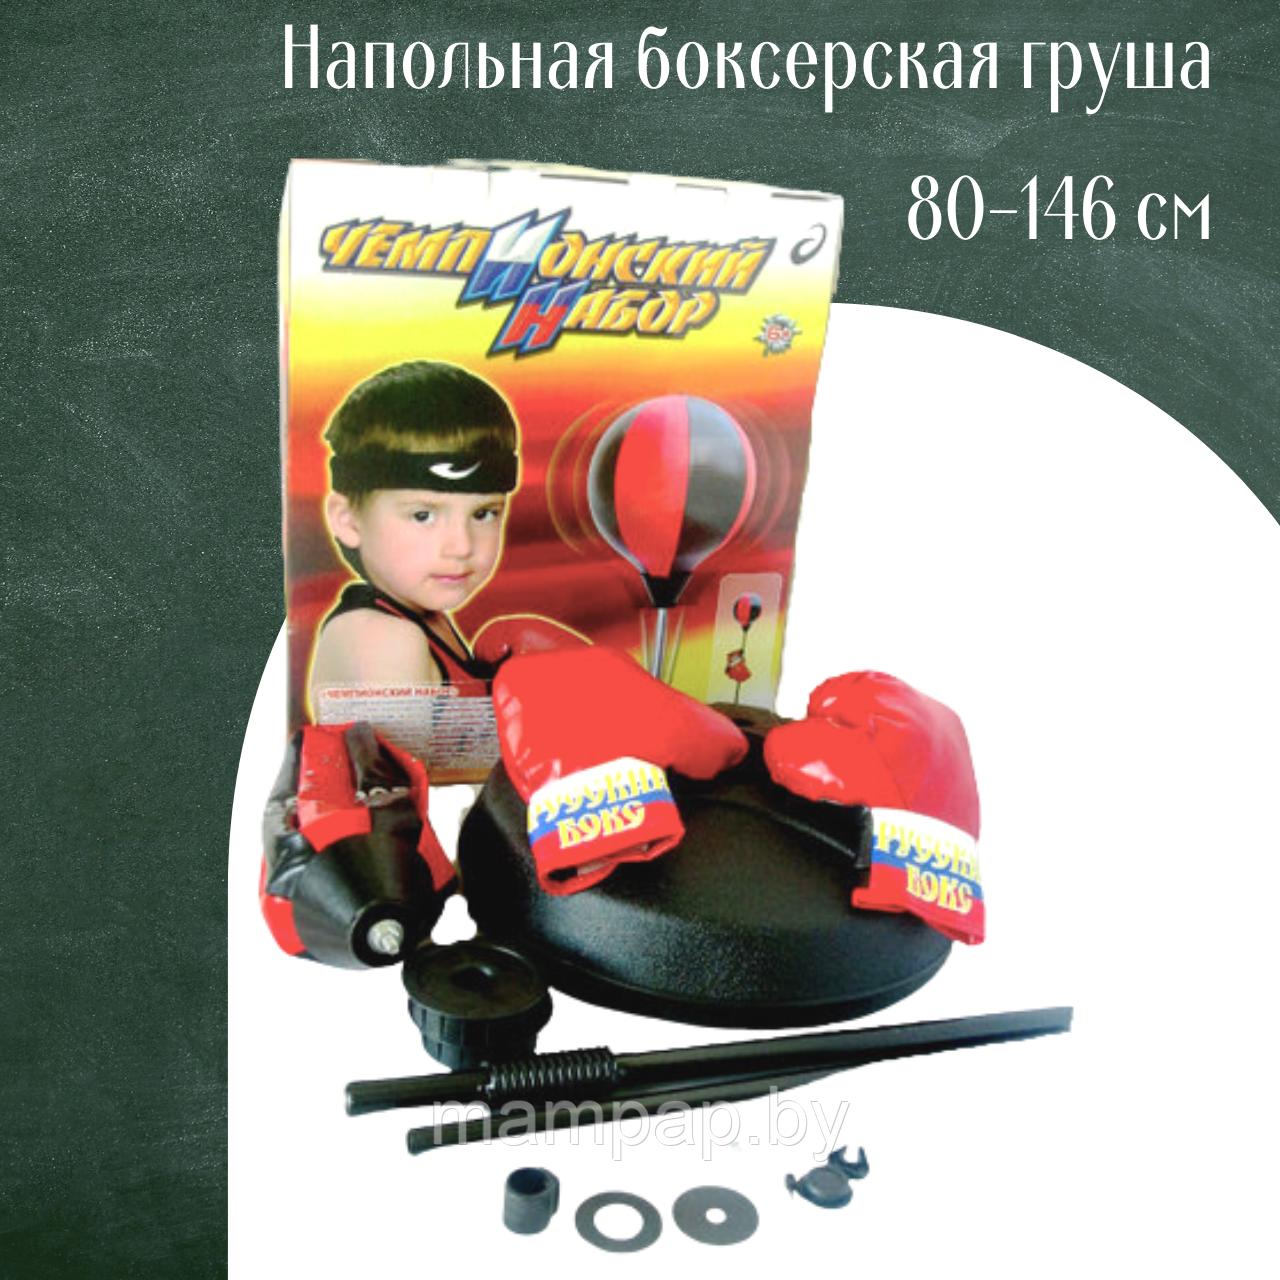 Груша боксёрская Чемпионский набор  на стойке 7555В + перчатки, боксёрский набор